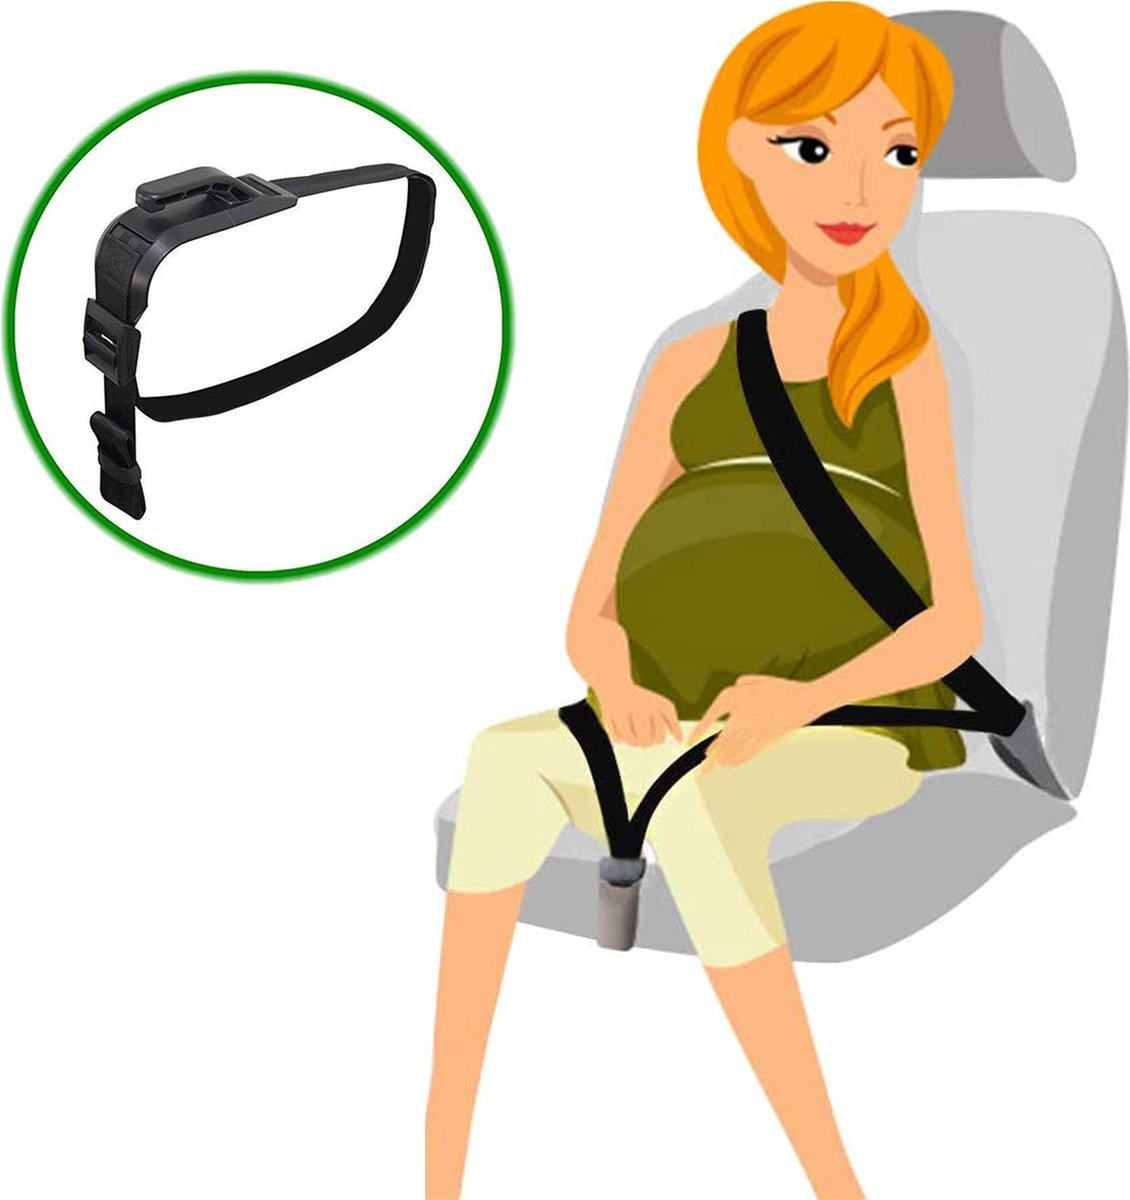 ceinture de grossesse pour voiture confort et sécurité pour la ceinture de sécurité pour les femmes enceintes Ceinture de sécurité Matymats pour femme enceinte 